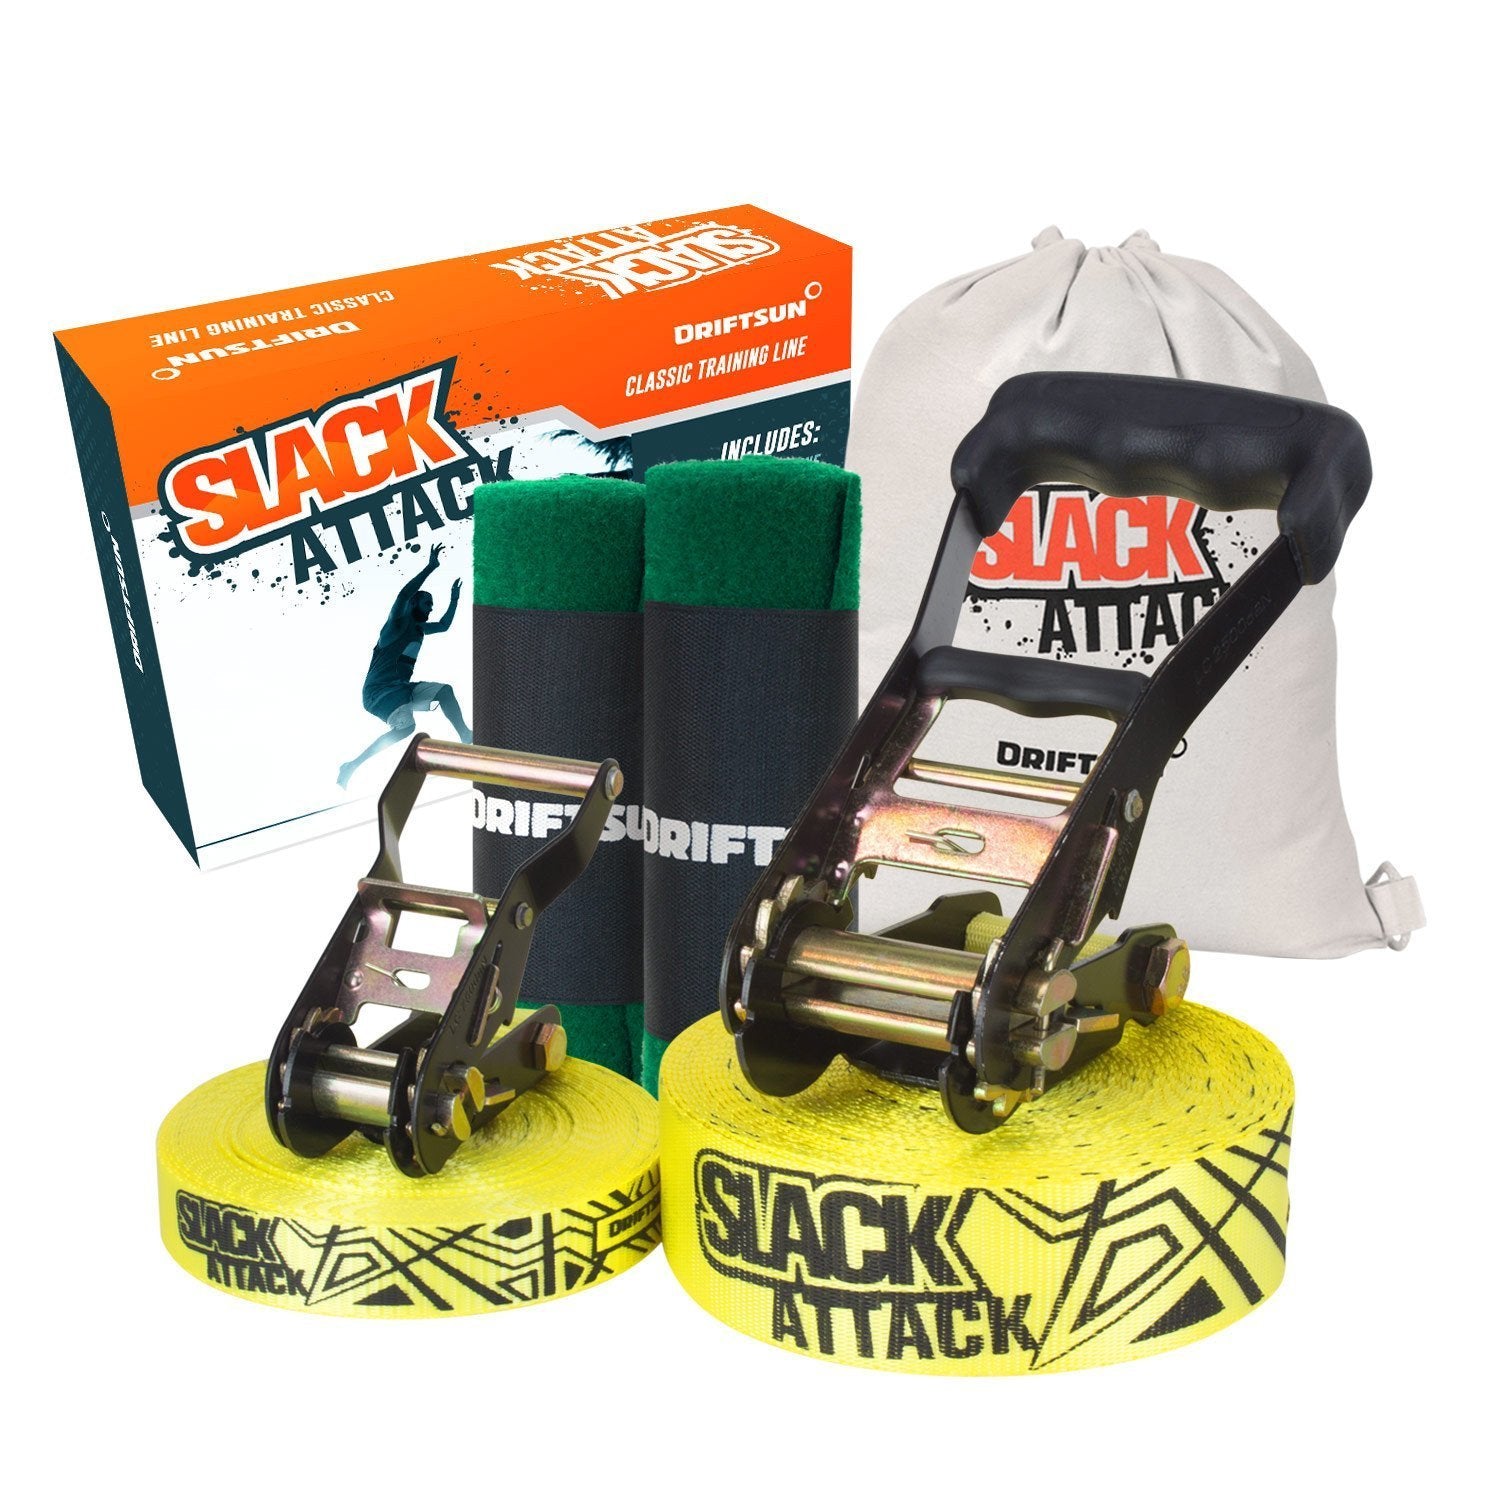 Complete Slackline Kit with Ratchet, Training Line & Bag